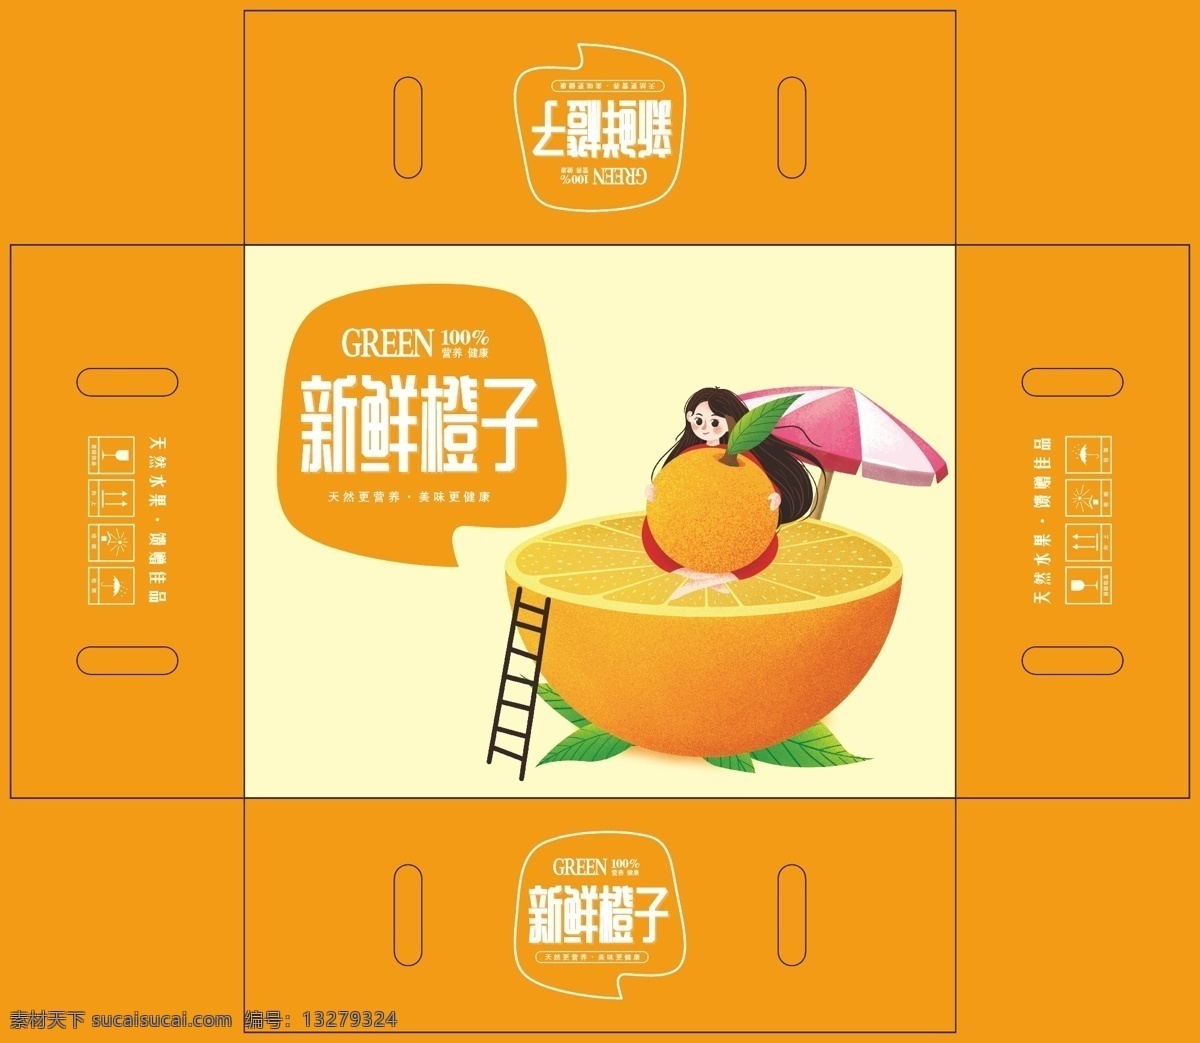 新鲜橙子 橙子 脆鲜果 橙子包装 橙子外箱 橙